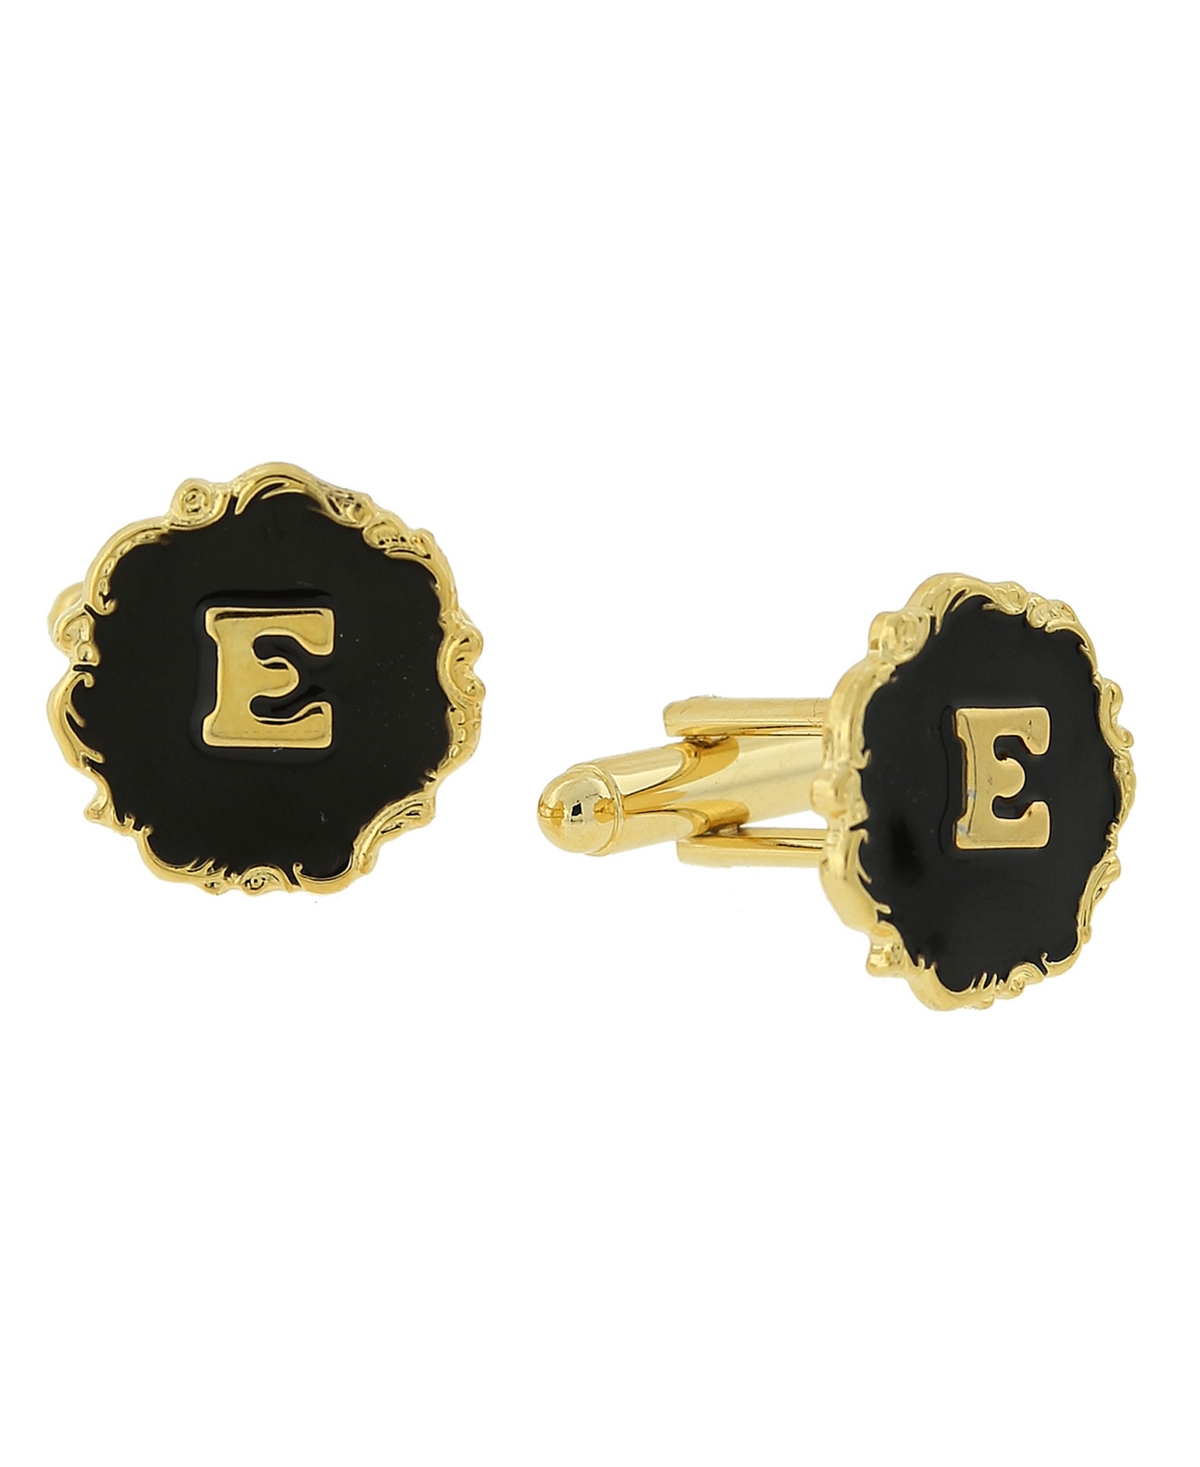 1928 Jewelry 14k Gold-plated Enamel Initial E Cufflinks In Black